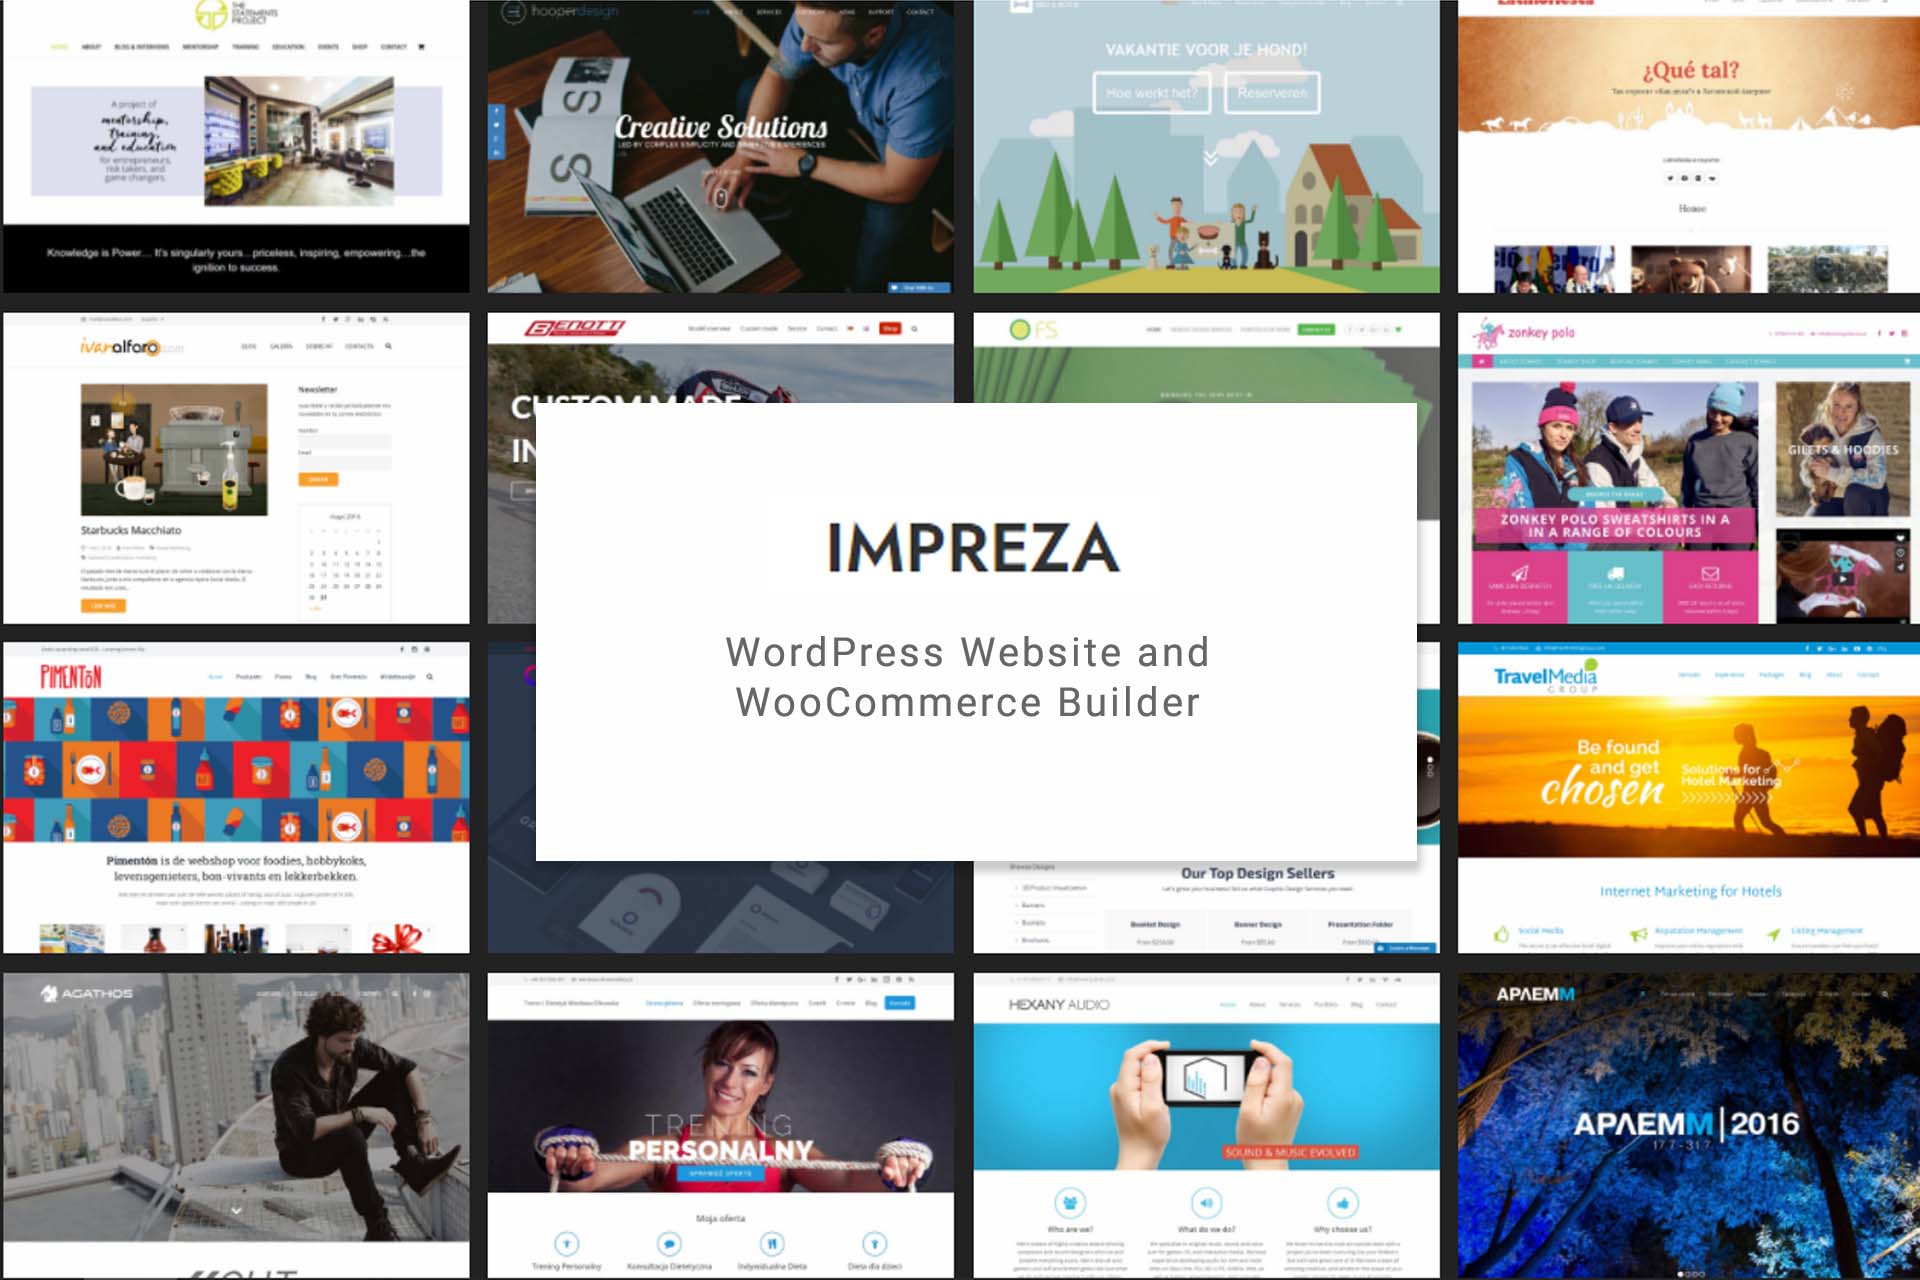 Impreza WordPress Theme